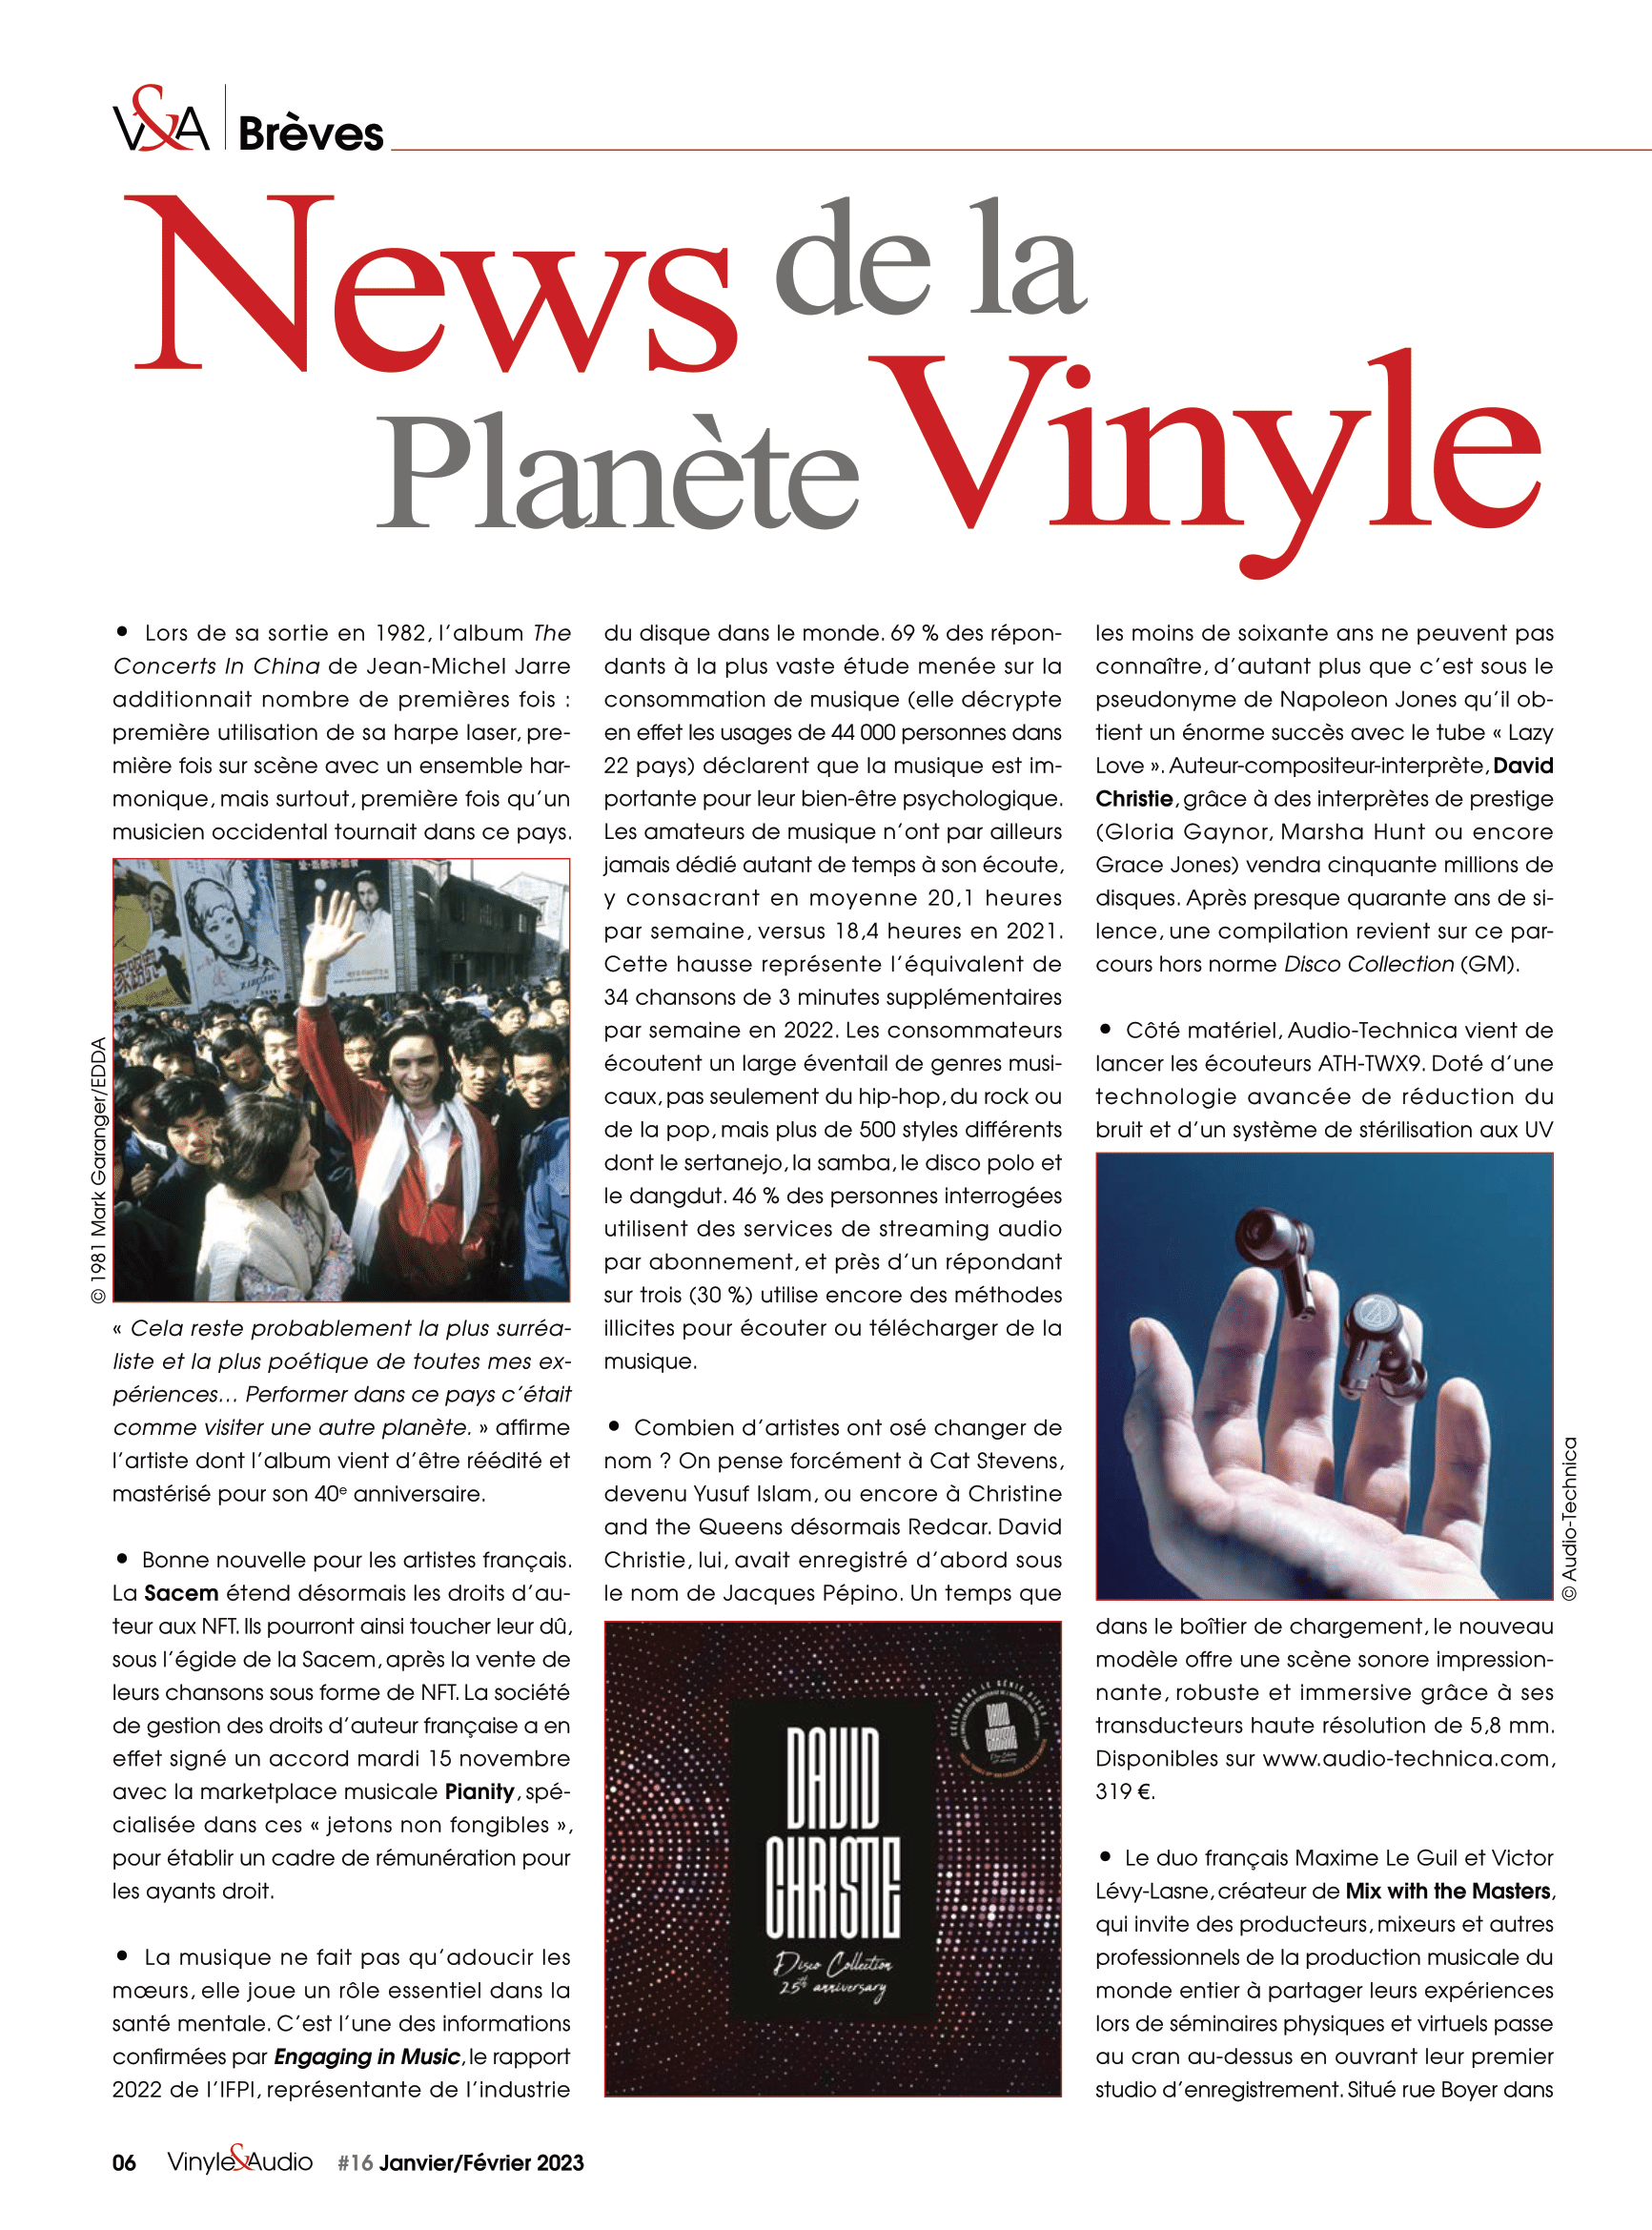 Vinyle & Audio n°16 : News de la Planète Vinyle